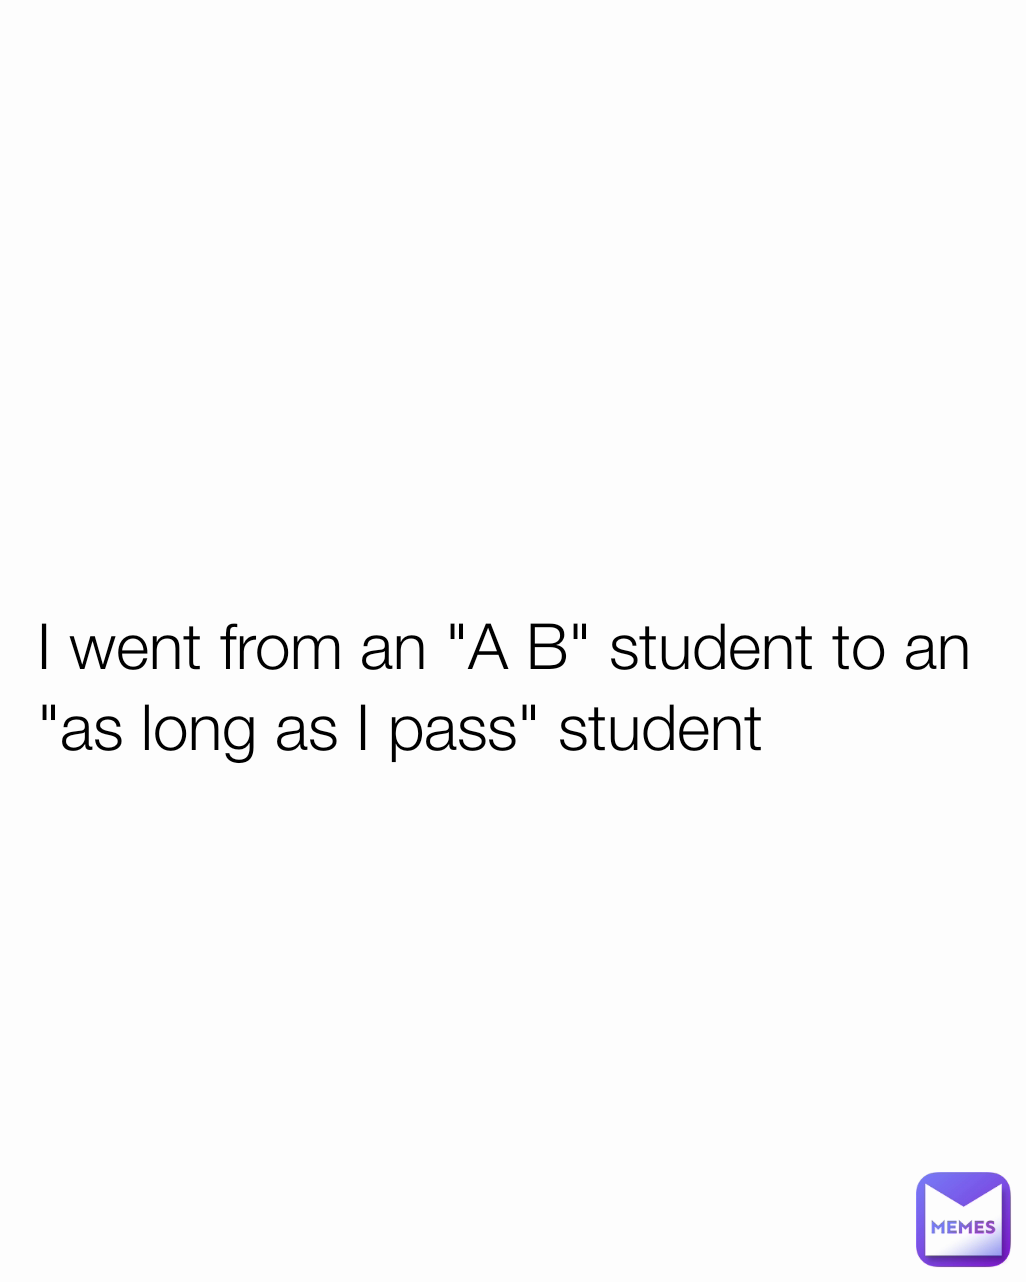 
 I went from an "A B" student to an
 "as long as I pass" student